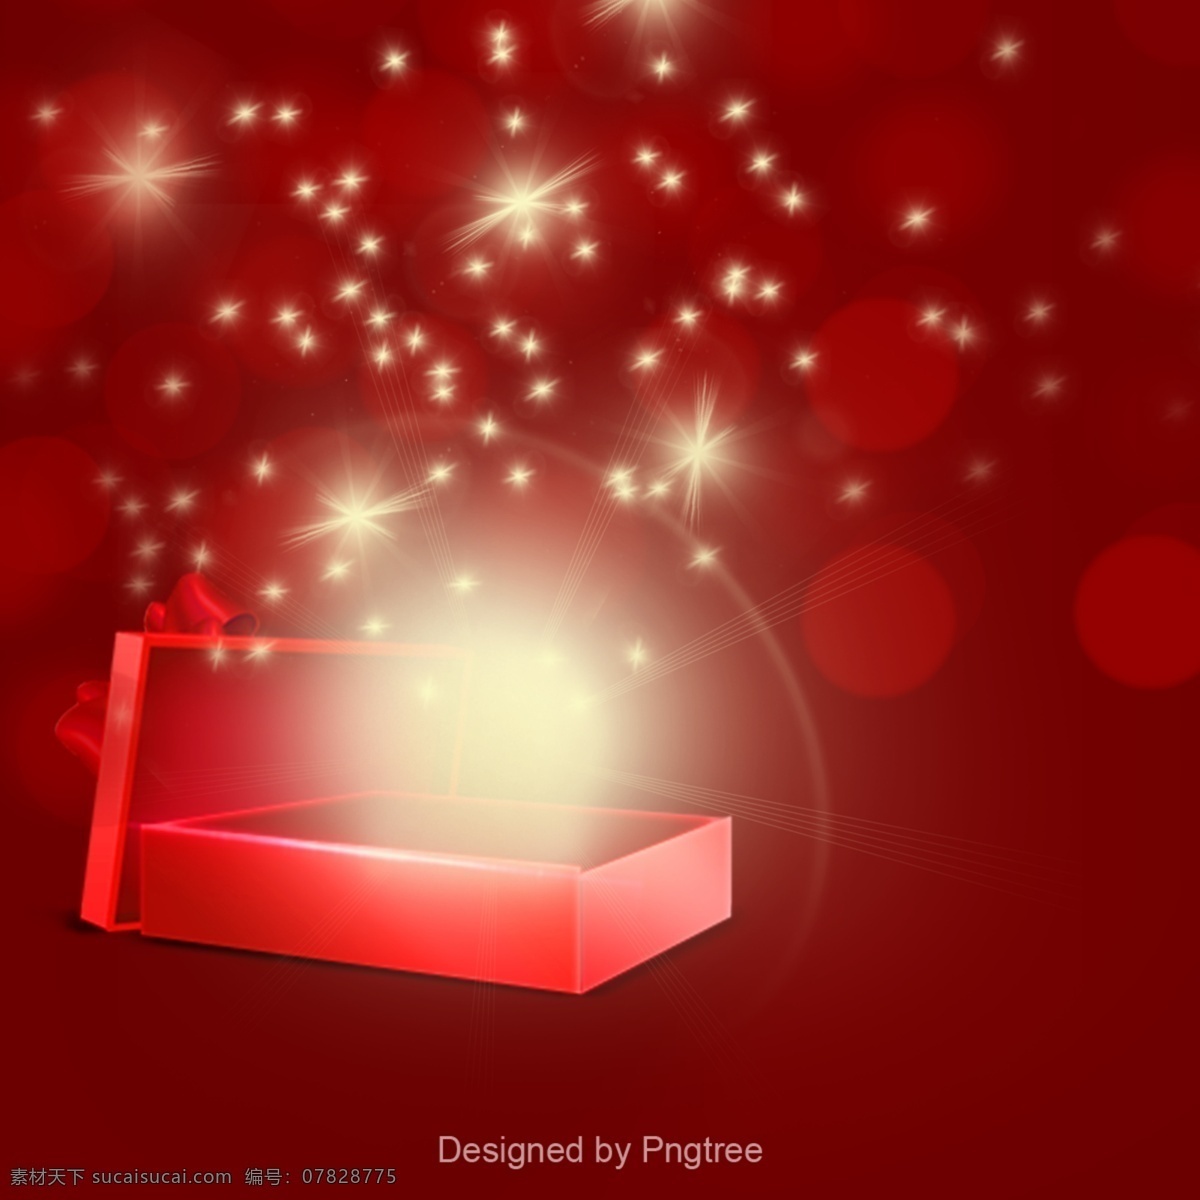 简单 美观 开放式 礼品 元素 梦幻 礼品盒 派对 红色 可爱 促销 装饰